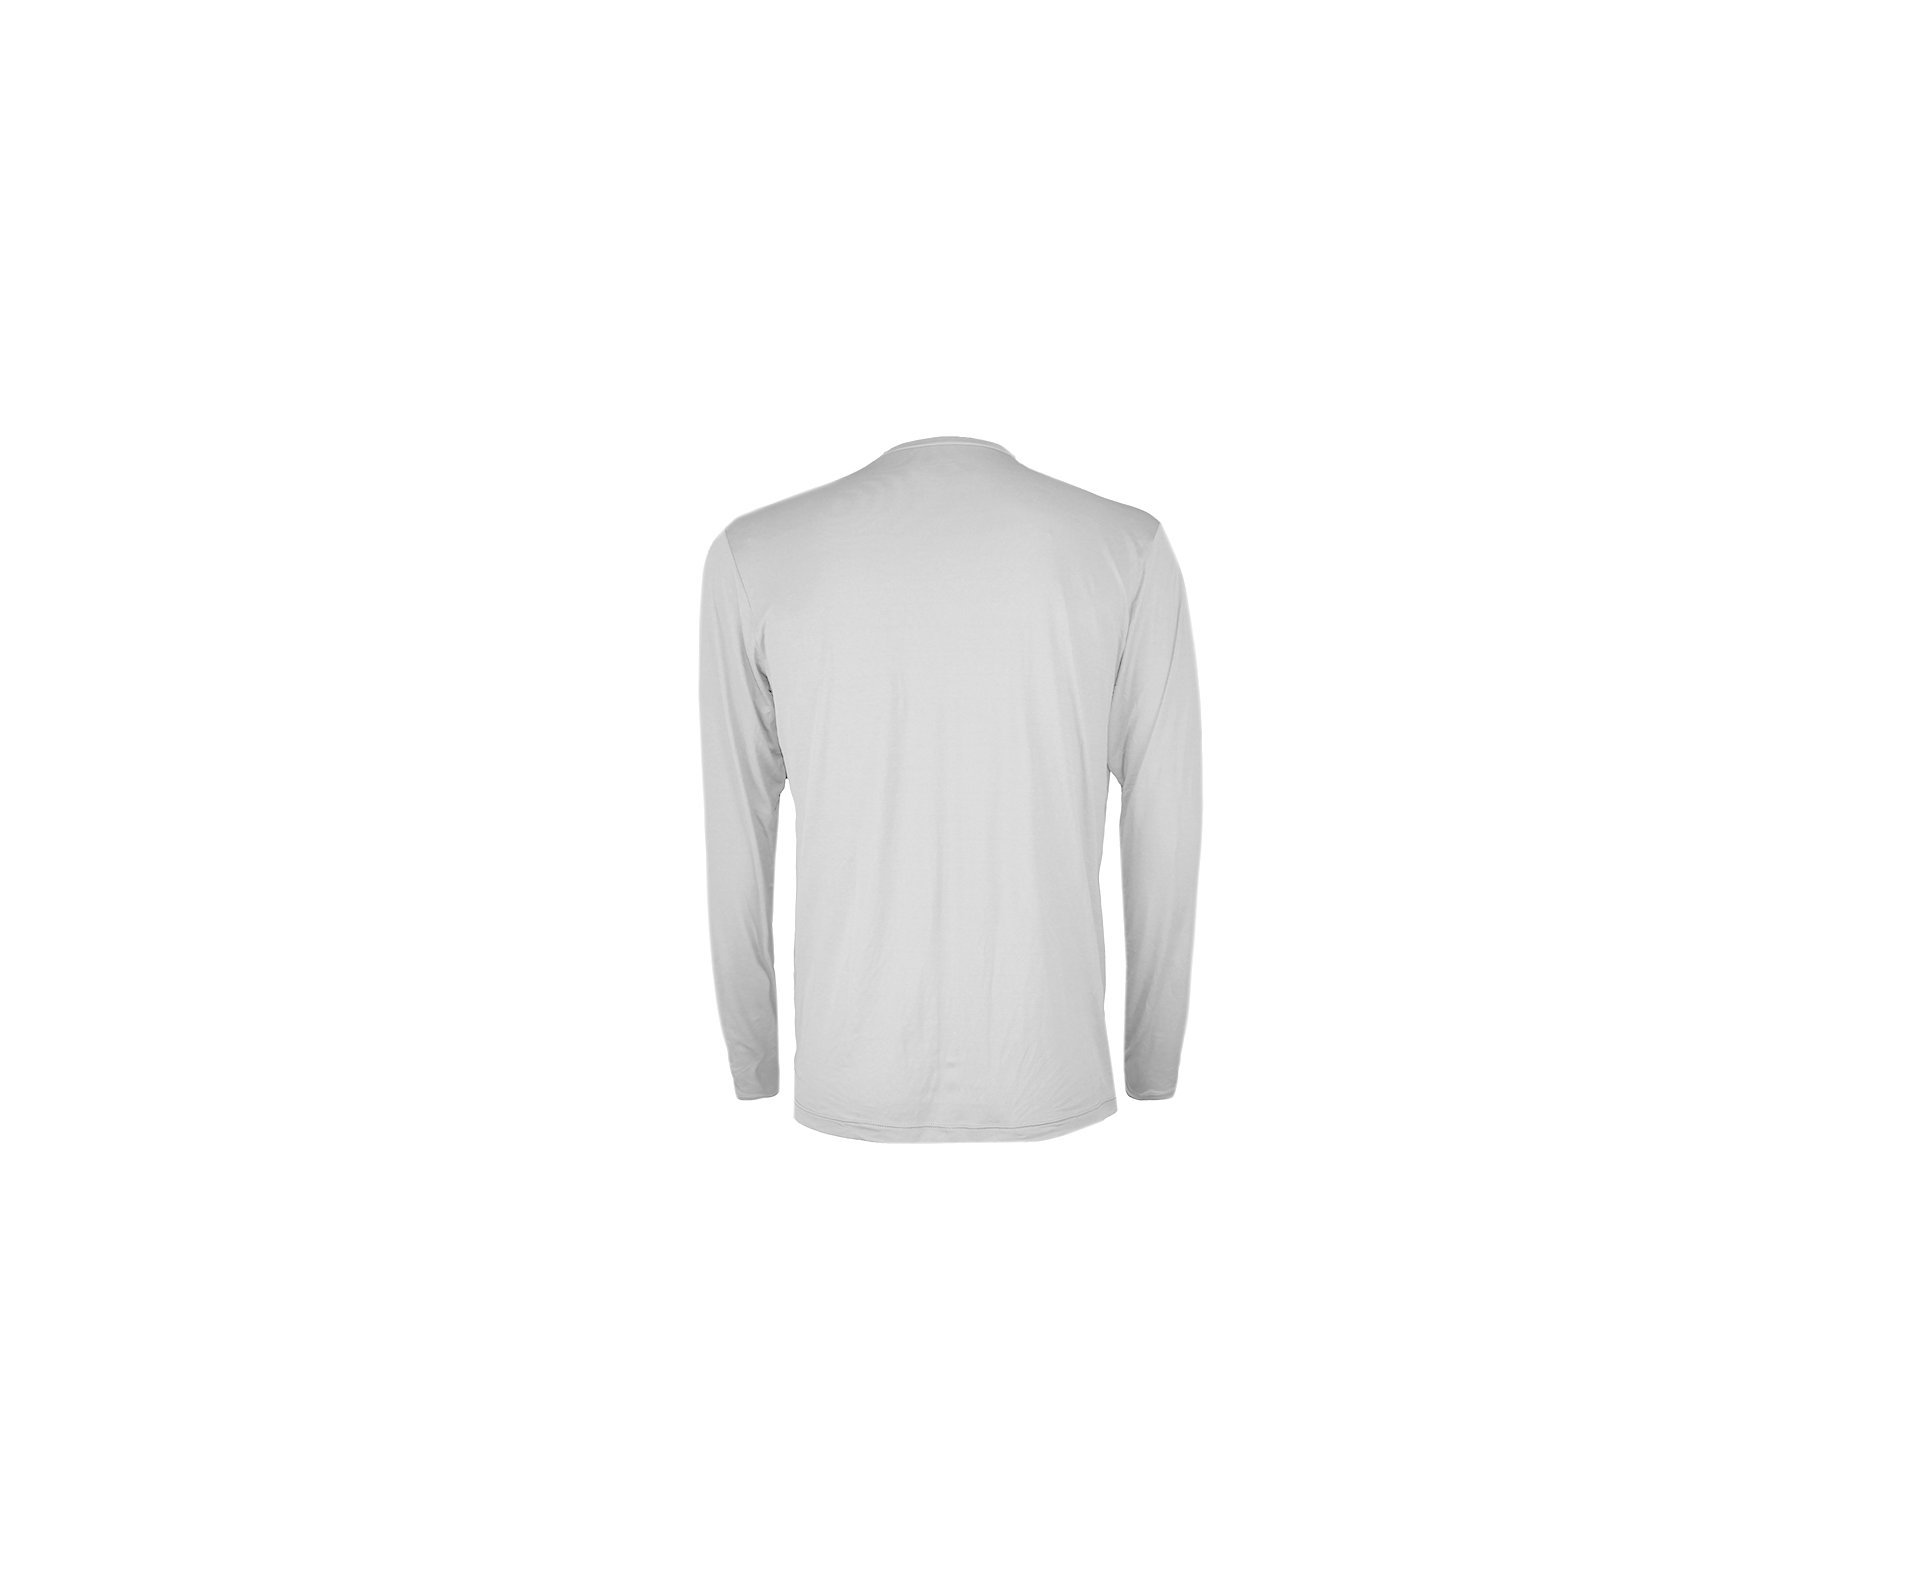 Camiseta Softline Branca - Proteção Uva/uvb 50+ Fps - Cardume - GG